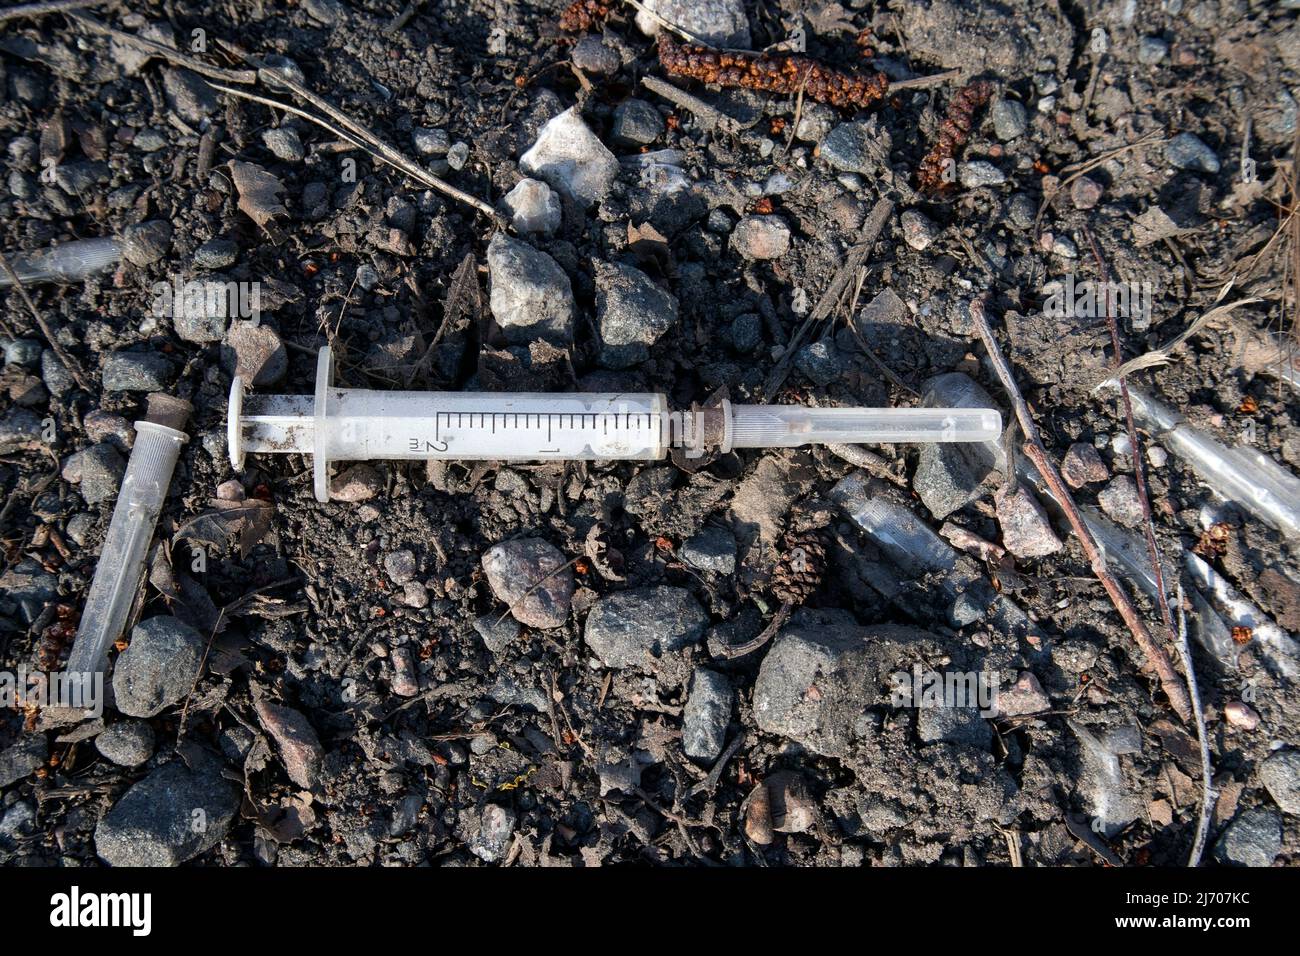 Used drug syringe on the ground Stock Photo